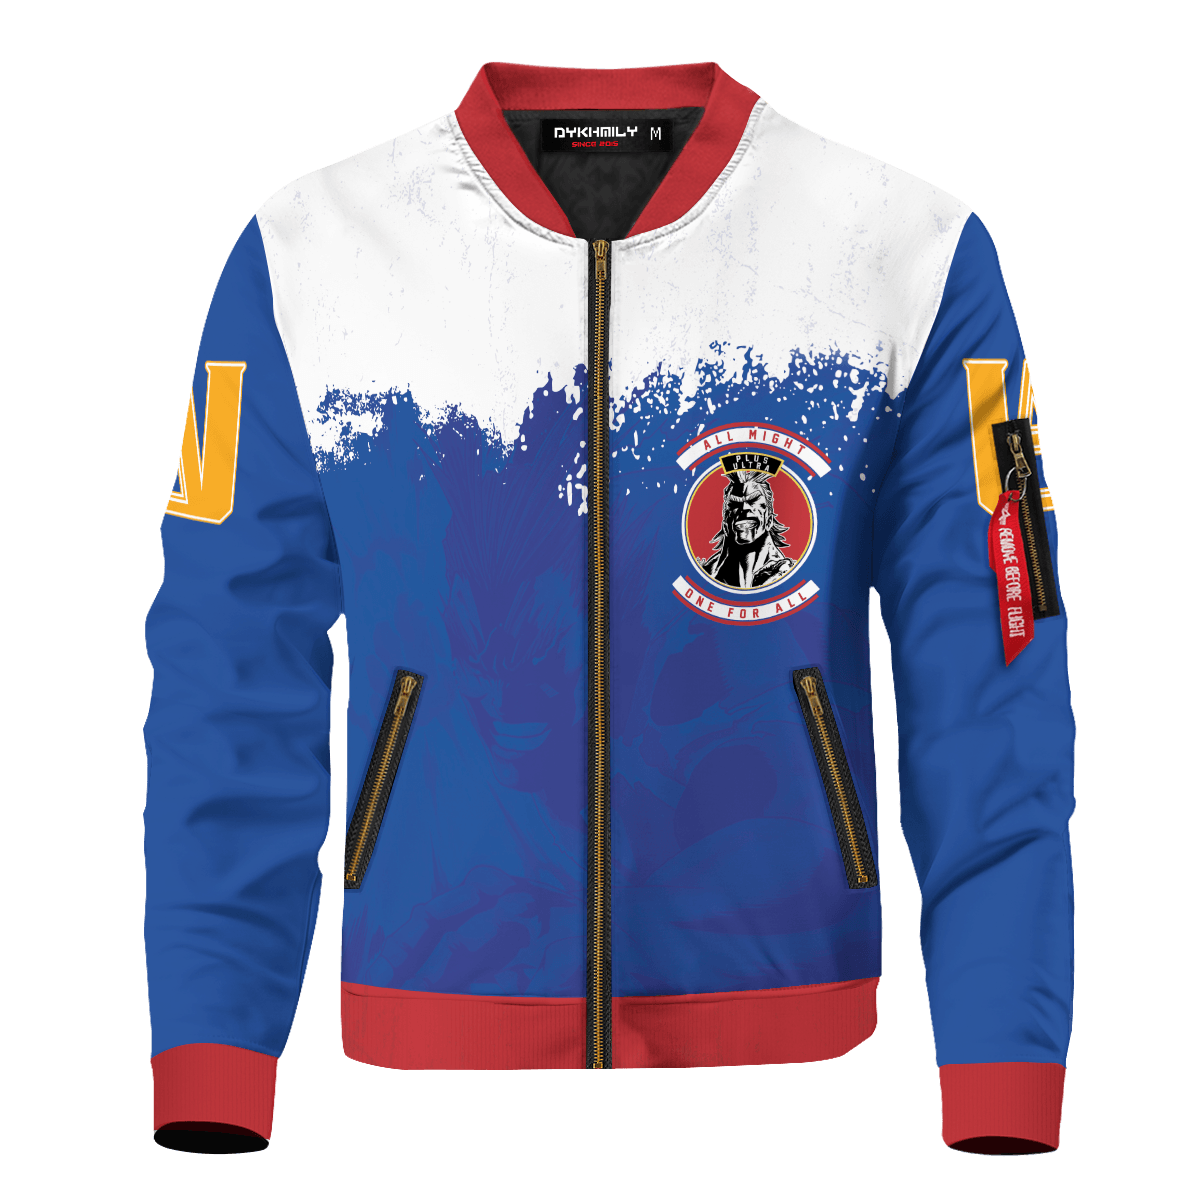 My Hero Academia Jacket - Anime Go Beyond Plus Ultra Bomber Jacket